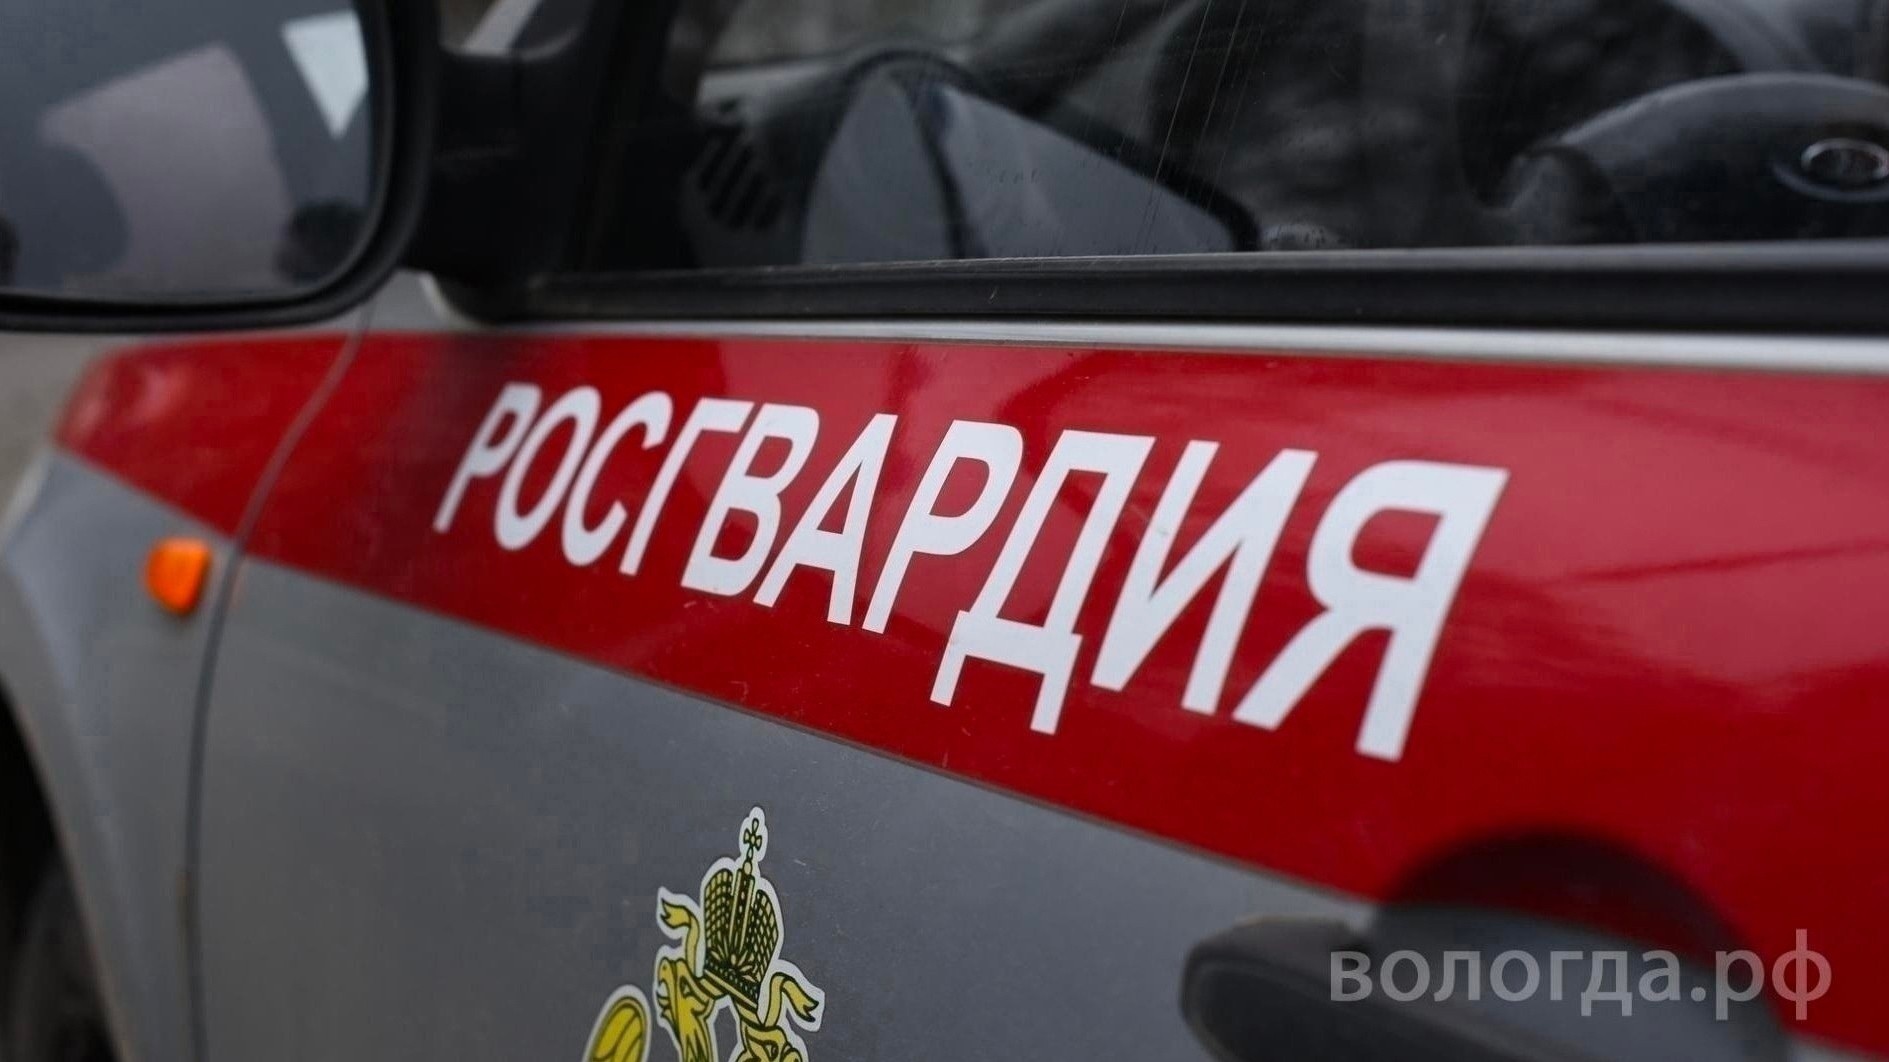 Более 30 правонарушений пресекли за неделю сотрудники вневедомственной охраны Росгвардии в Вологодской области